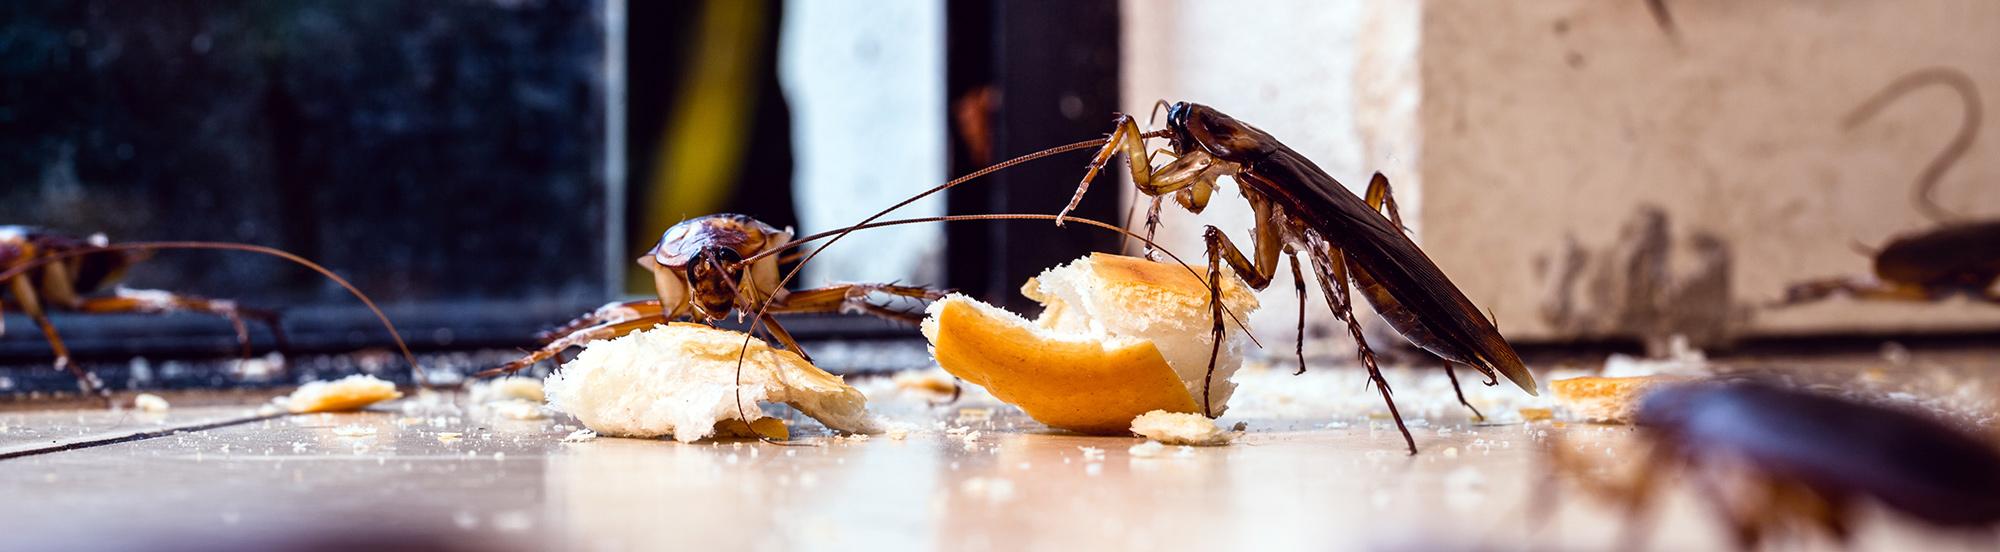 american cockroaches eating crumbs off kitchen floor